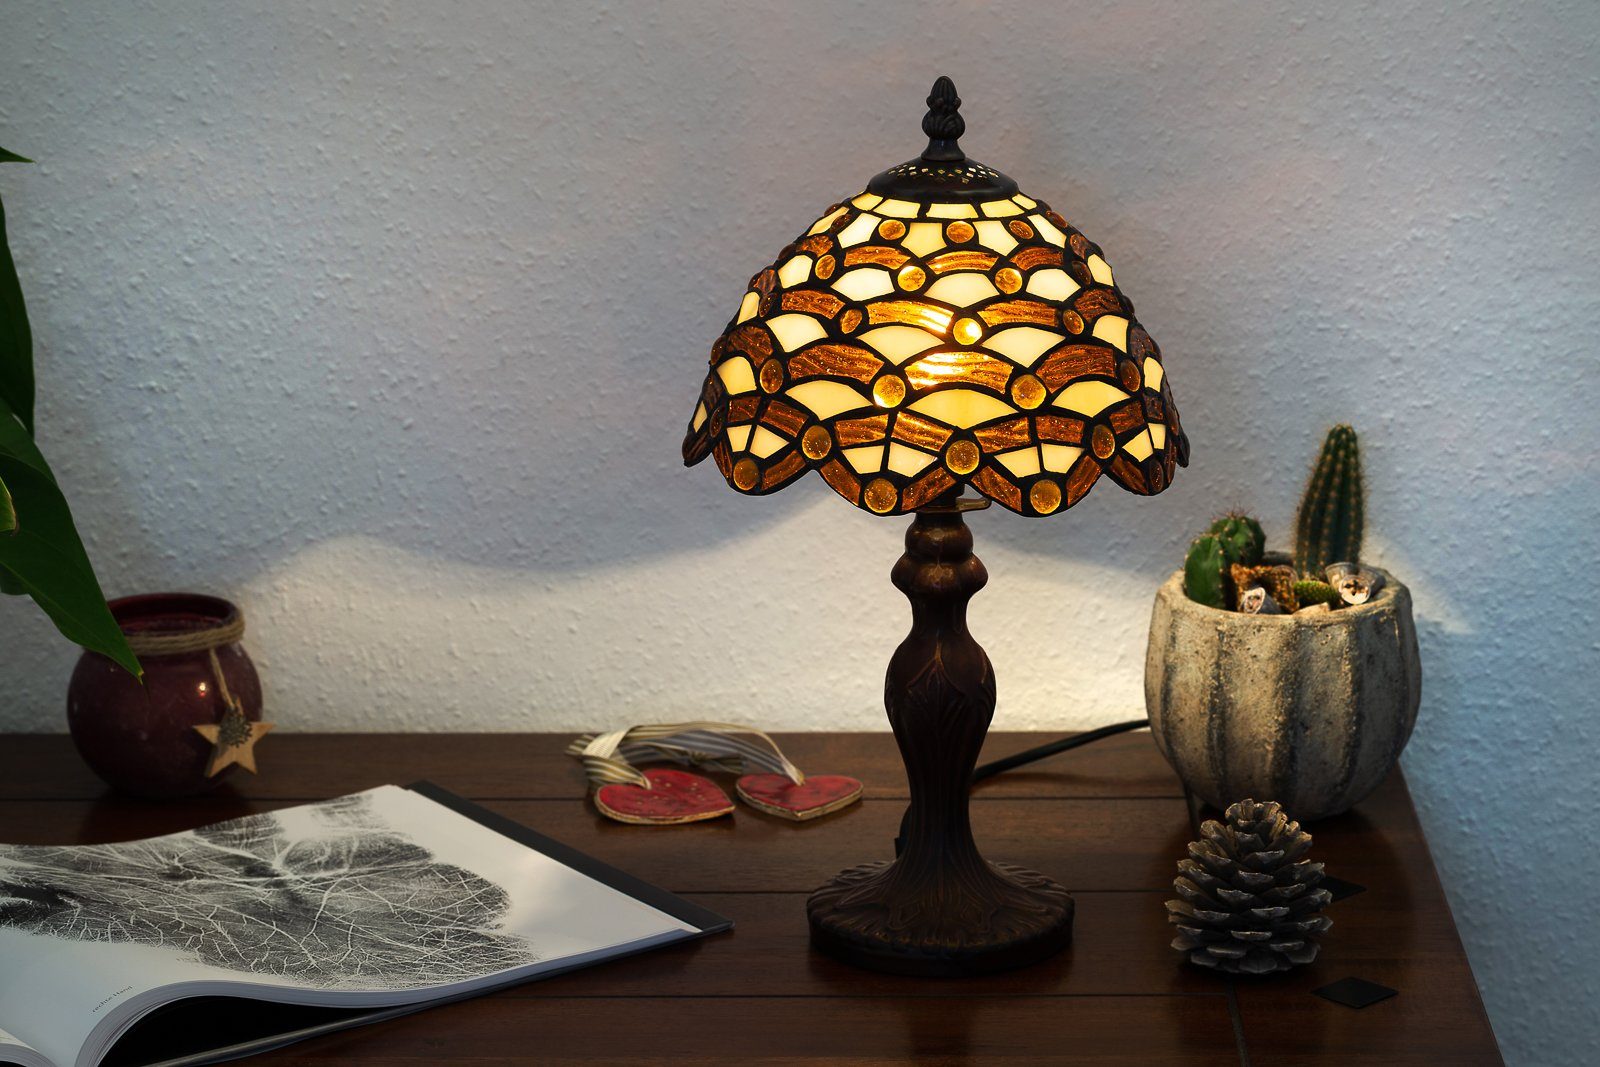 Lampe Dekorationslampe Motiv Waben Tischlampe BIRENDY Stehlampe Tiffany Ti156 Steine